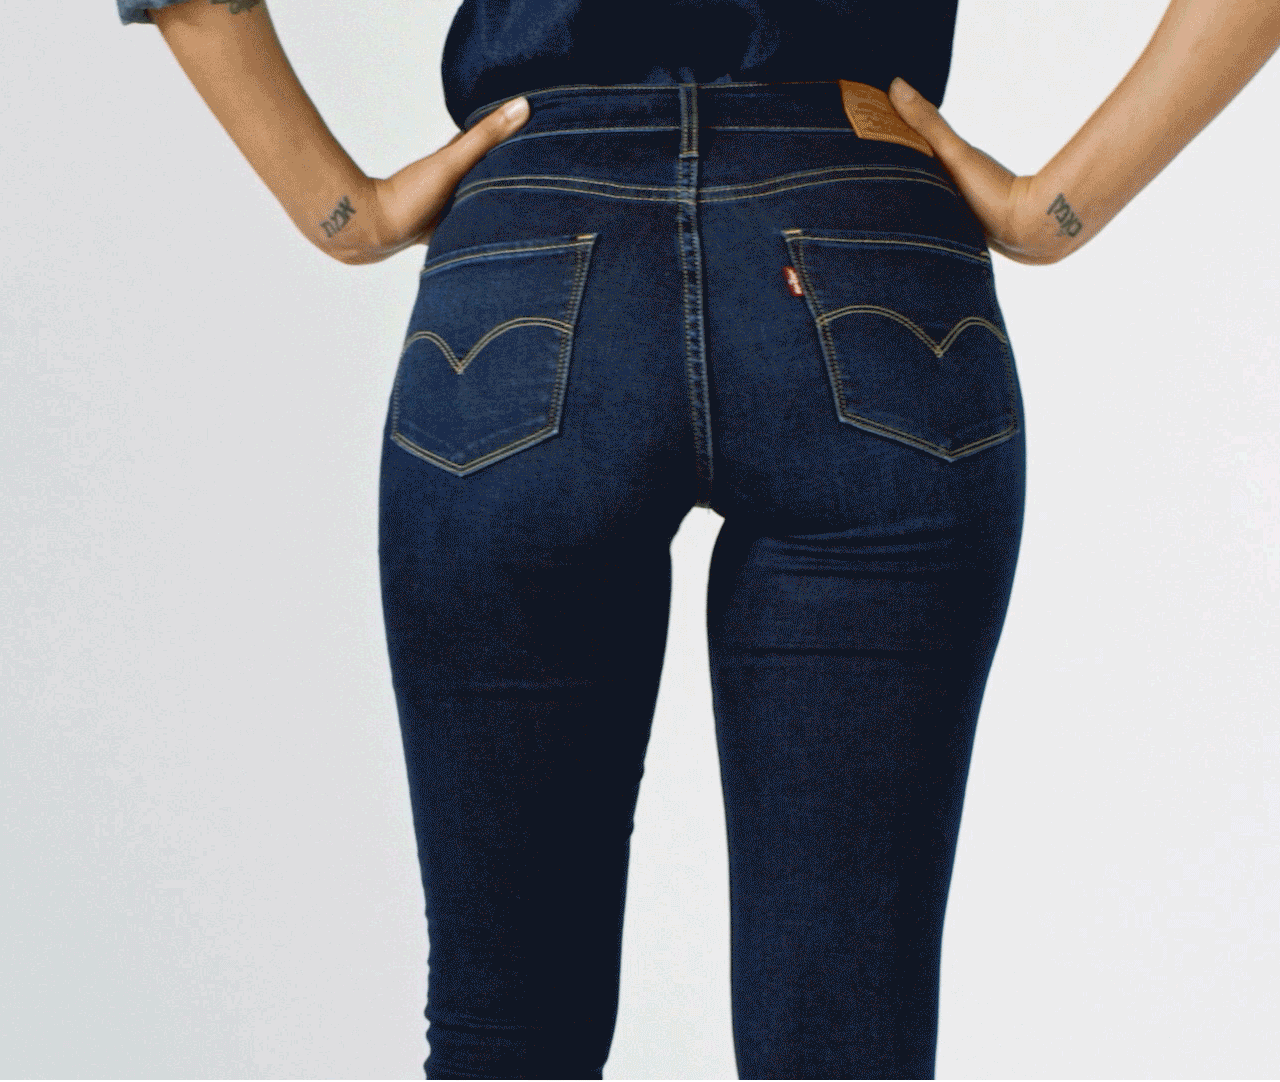 Levi's Sculpt Jeans | Fashion Blog by Apparel